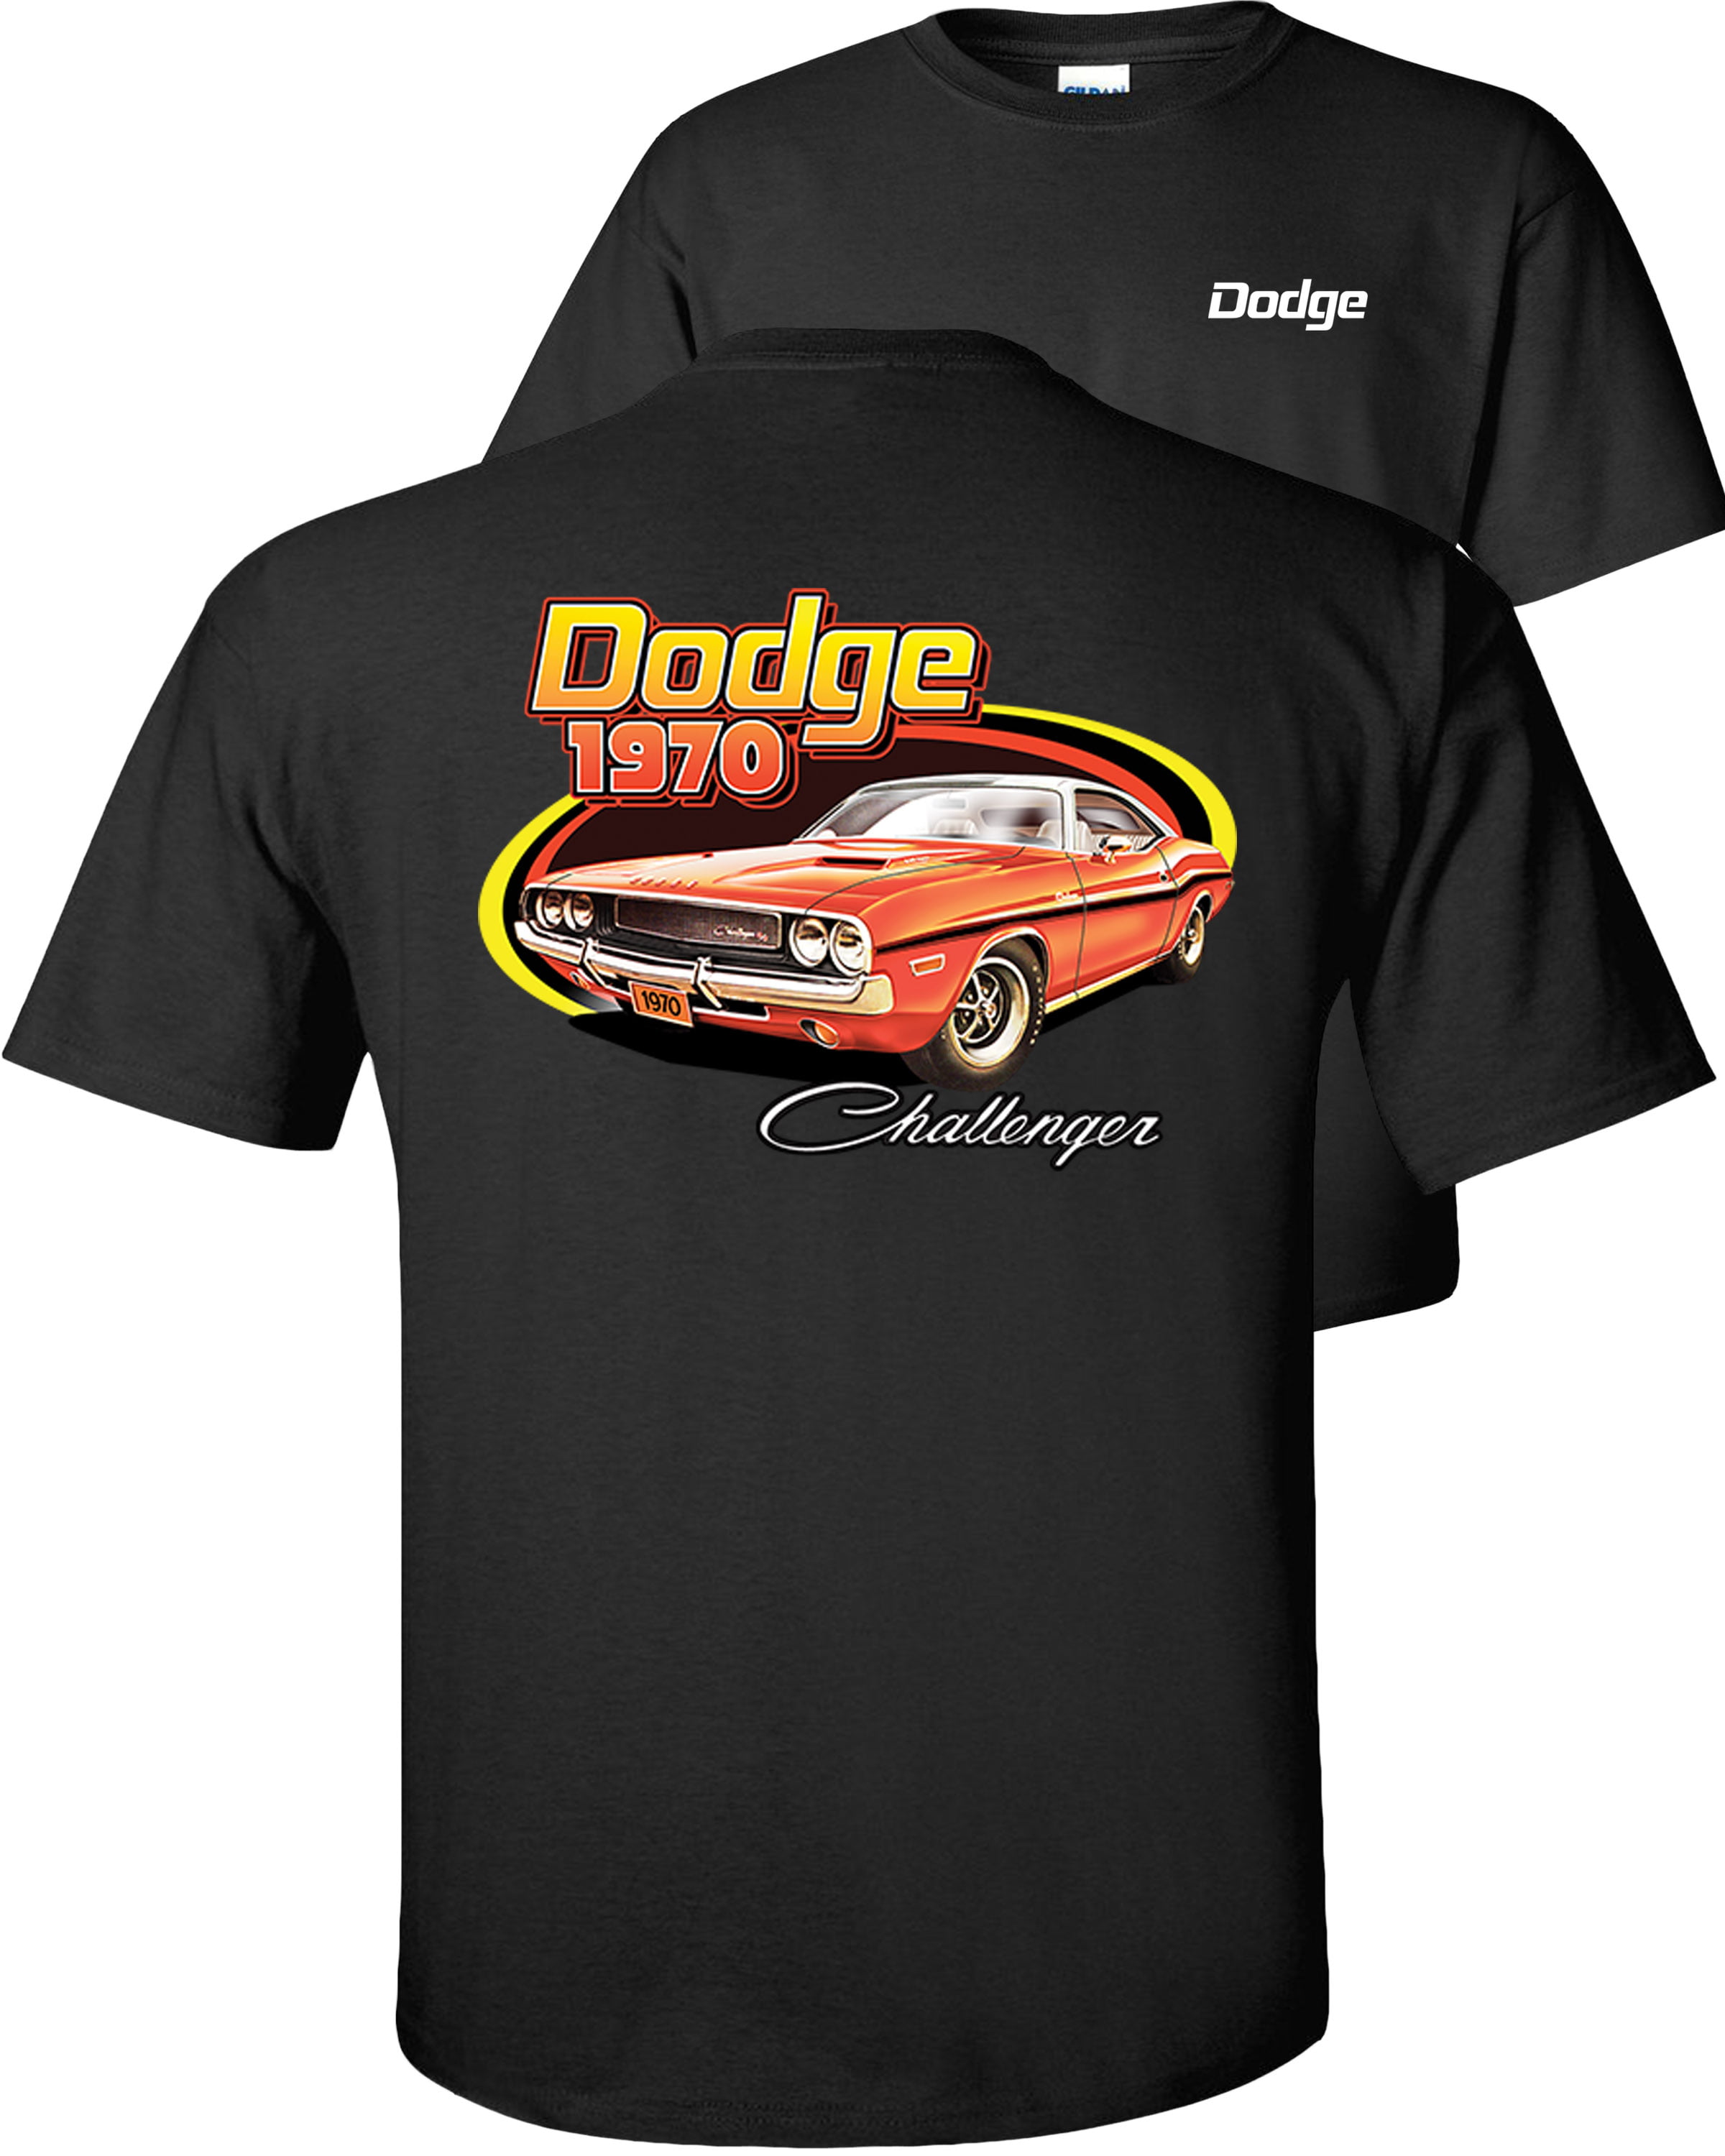 Fair Game - Dodge Challenger T-Shirt 1970 F&B - Walmart.com - Walmart.com